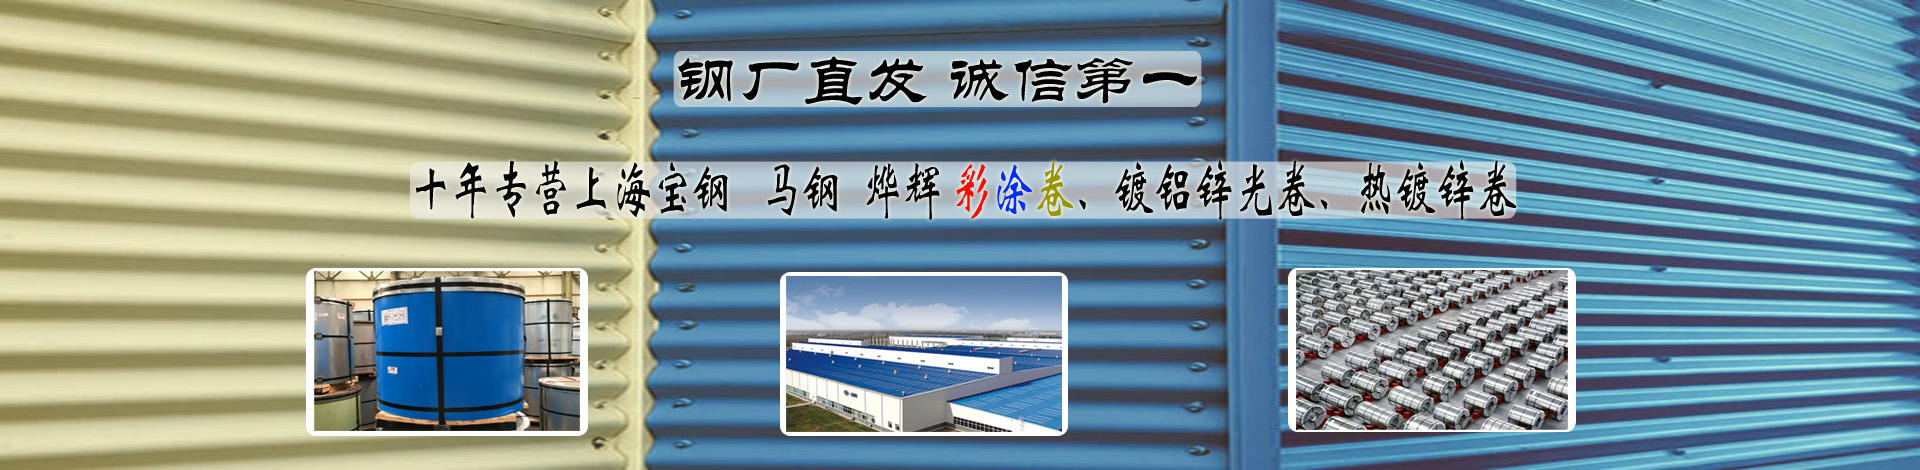 专业生产上海宝钢彩钢板公司